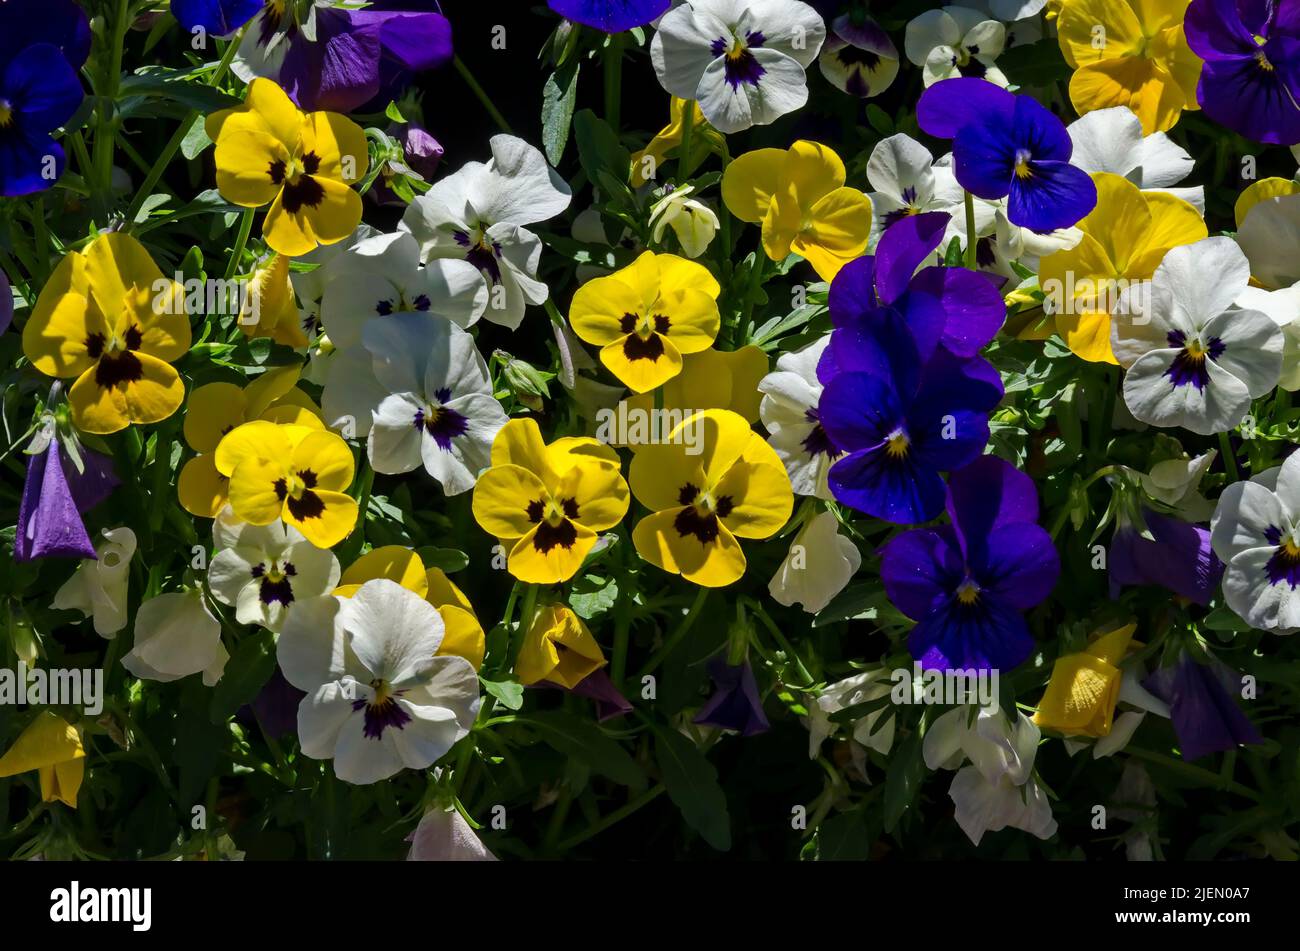 Mischung aus violetten, gelben, rosa und weißen Veilchen, Altai violett oder lila Blume, Sofia, Bulgarien Stockfoto